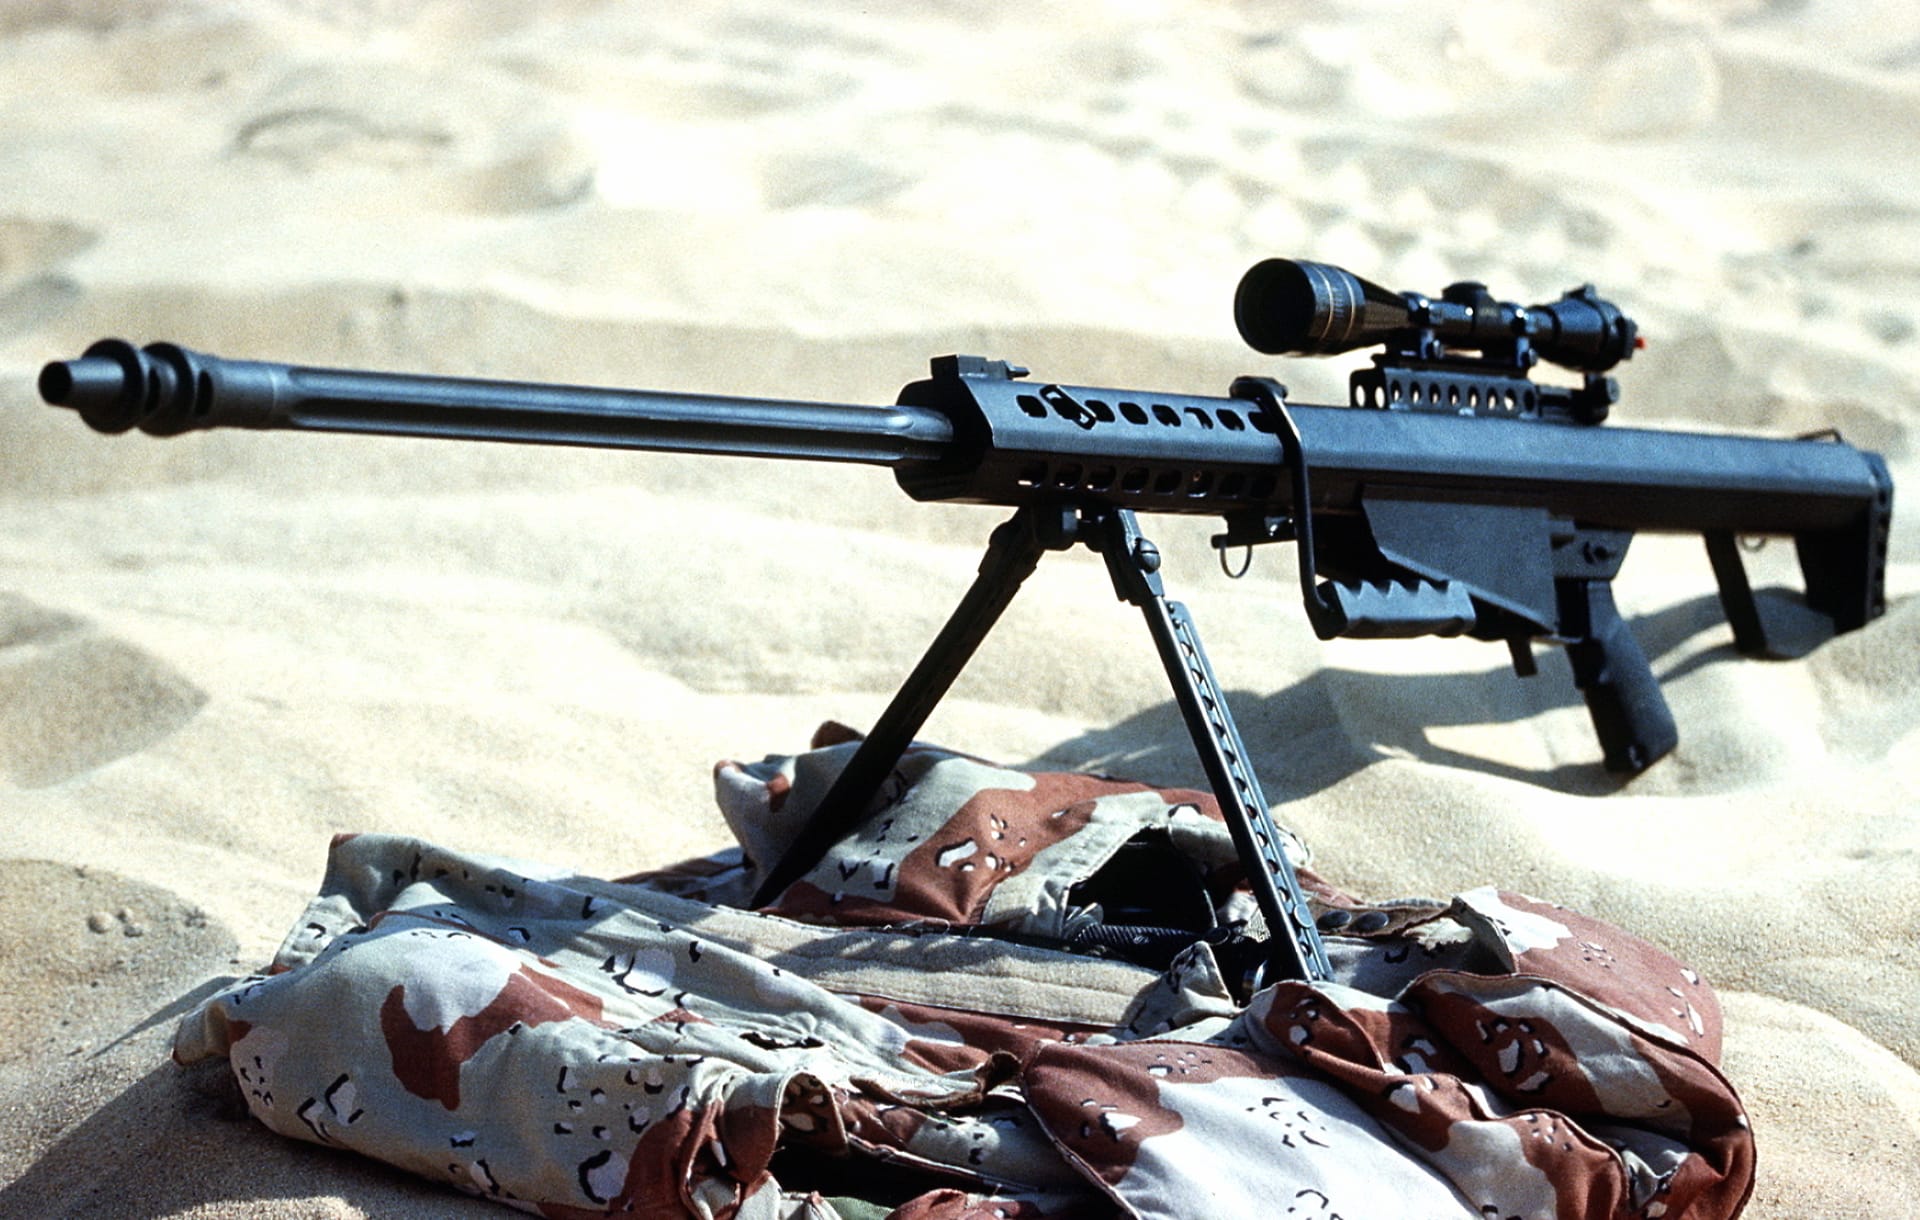 Barrett M82 Sniper Rifle at 1280 x 960 size wallpapers HD quality